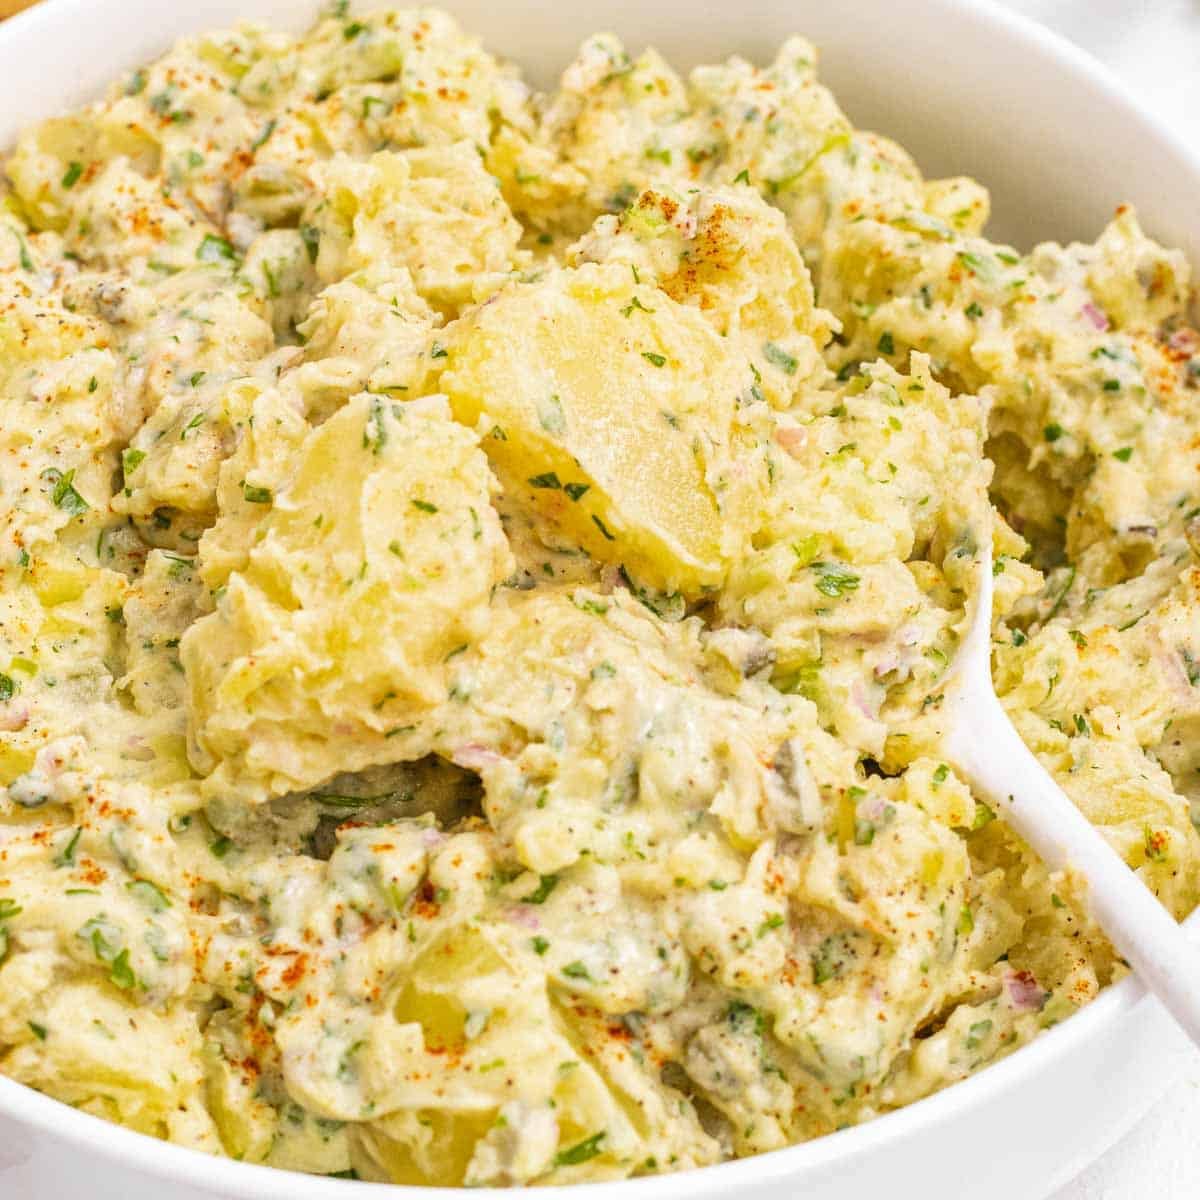 Vegan potato salad with herbs